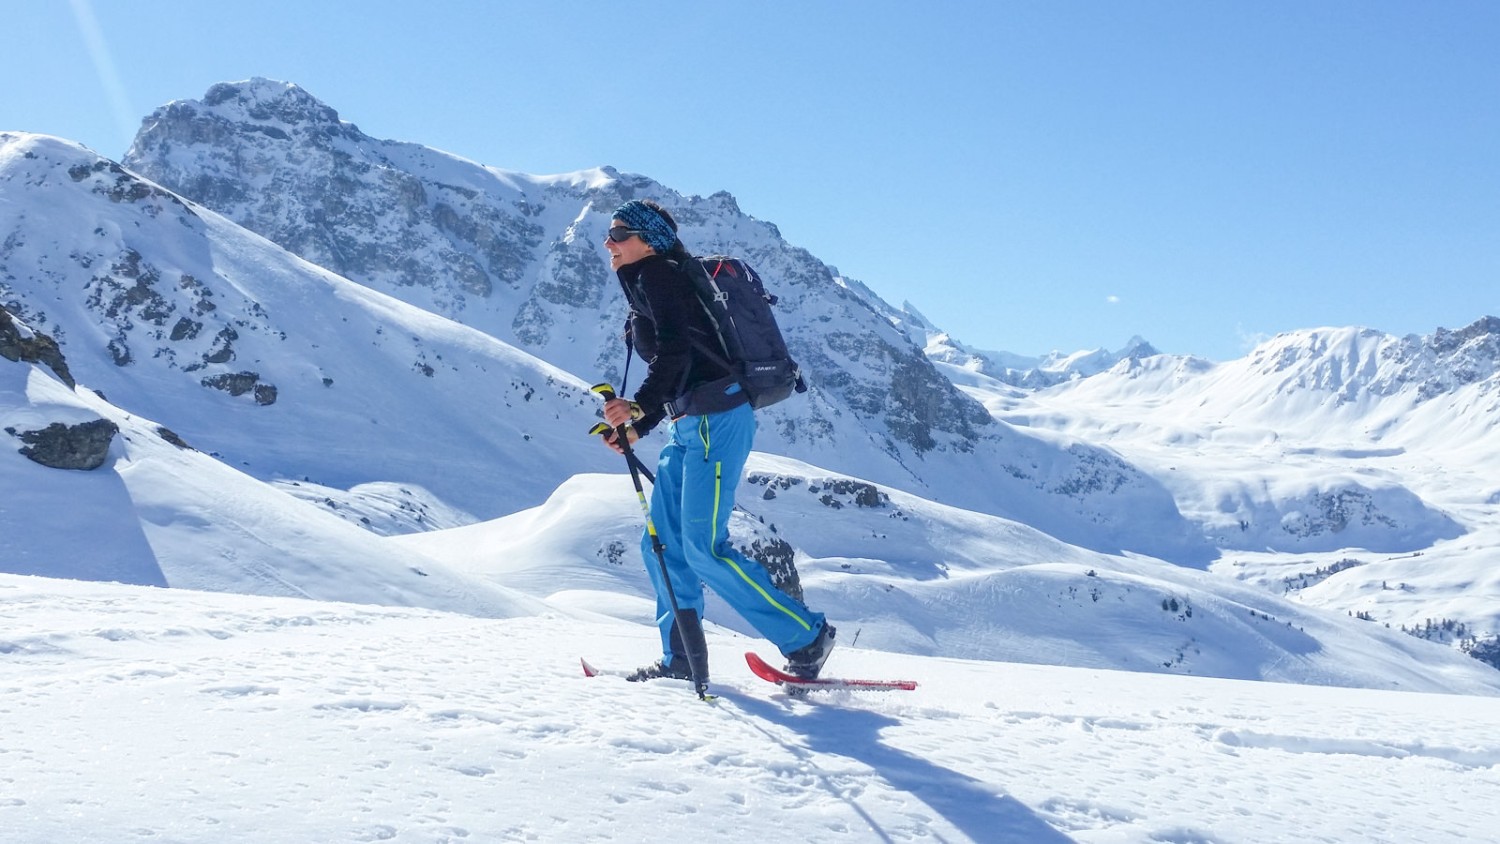 Le trajet se déroule dans des paysages grassement enneigés, loin des pistes de ski. Photo: Alexandra Blatter